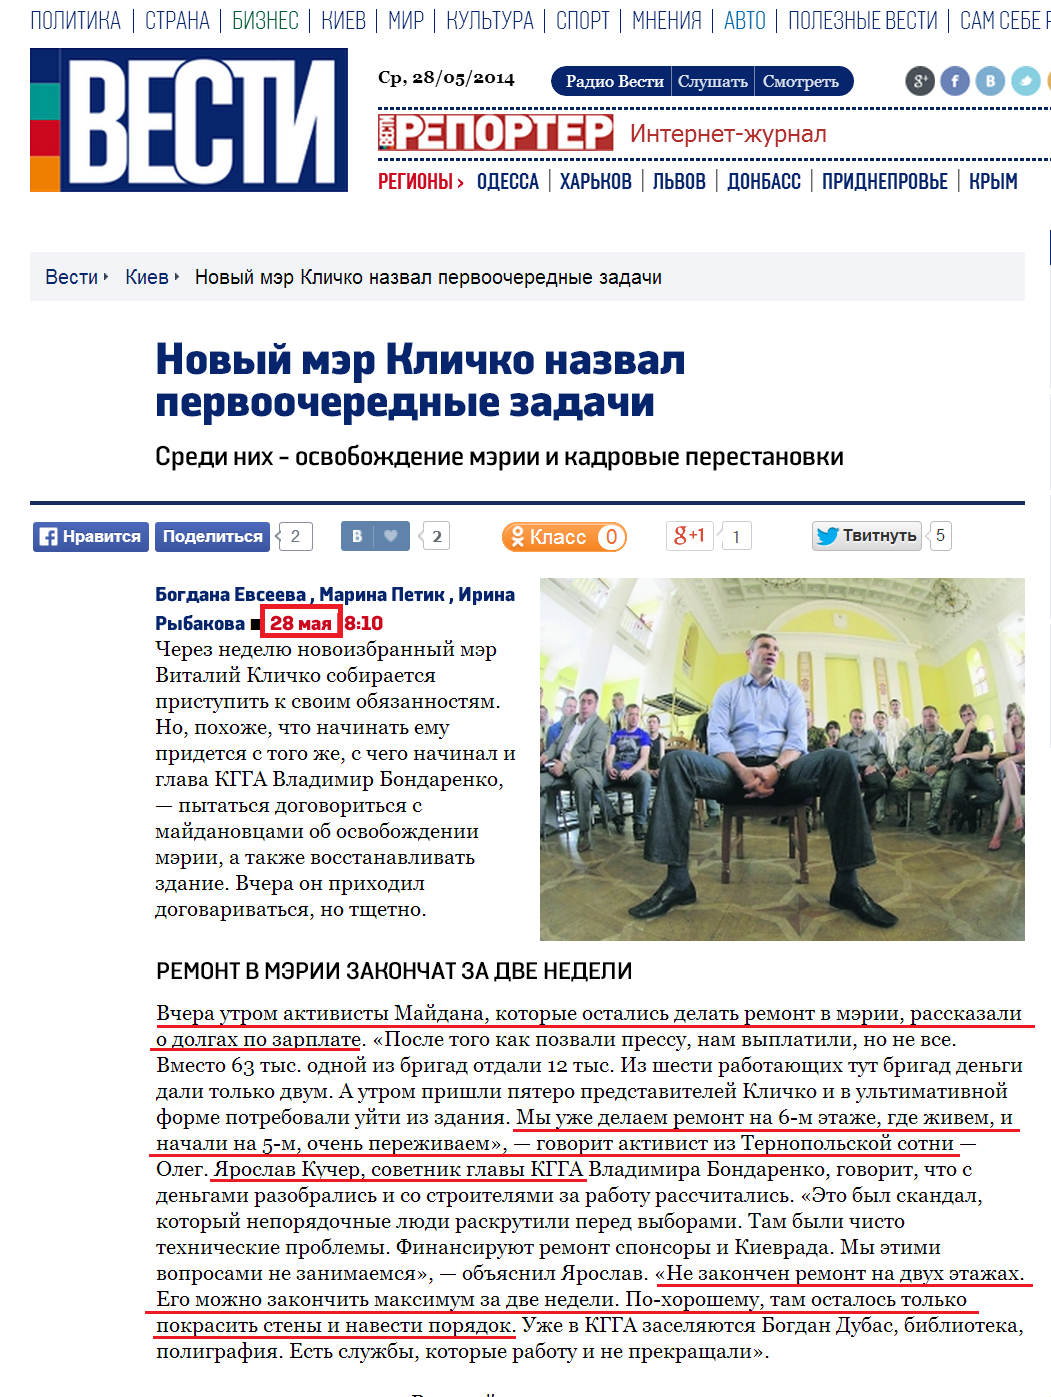 http://vesti.ua/kiev/53914-novyj-mjer-klichko-nazval-pervoocherednye-zadachi